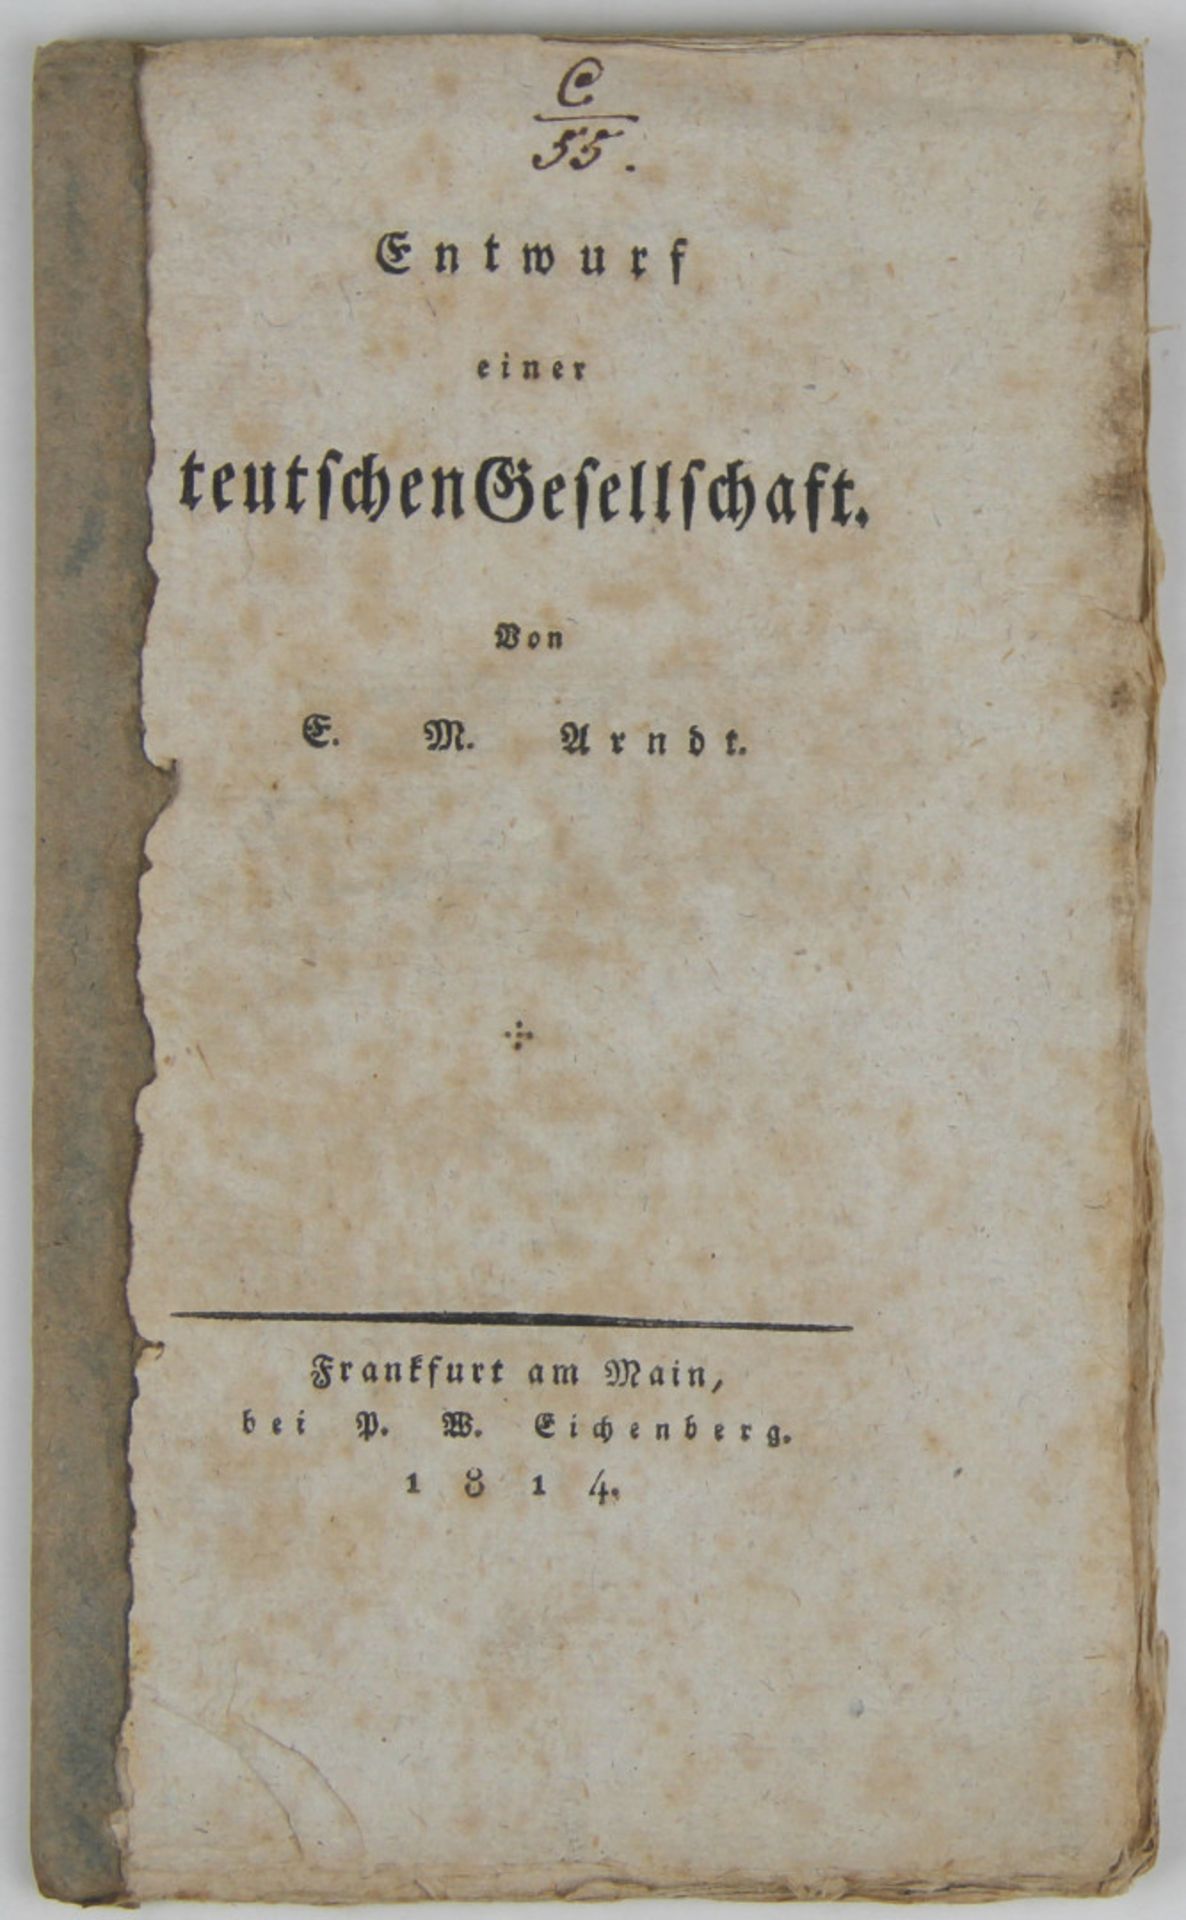 Arndt, Ernst Moritz: Entwurf einer teutschen Gesellschaft.